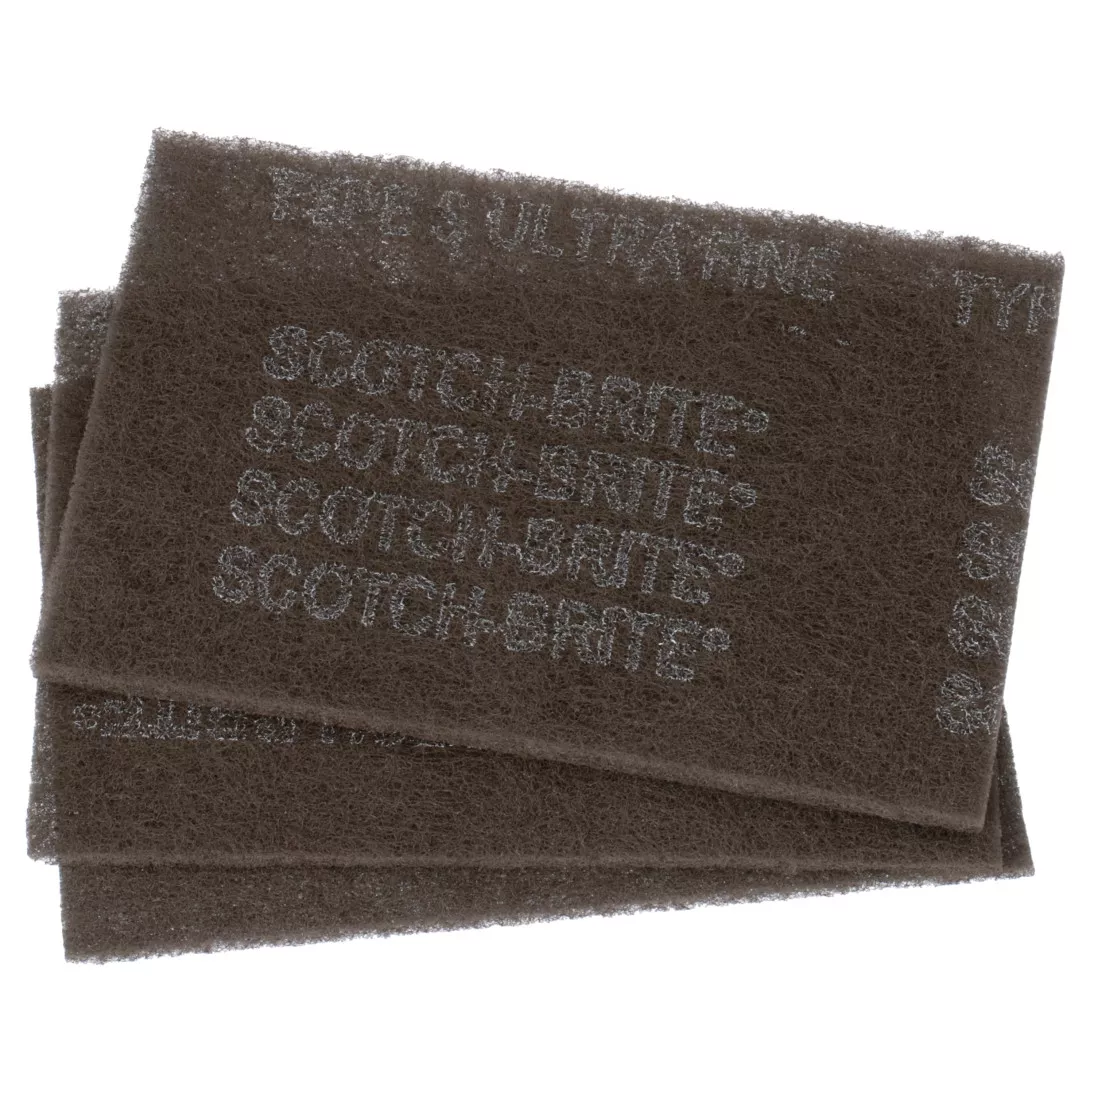 Scotch-Brite™ Hand Pad 7448, 37448, HP-HP, SiC Ultra Fine, Gray, 9 in x 6 in, 3/Pack, 10 Packs/Case